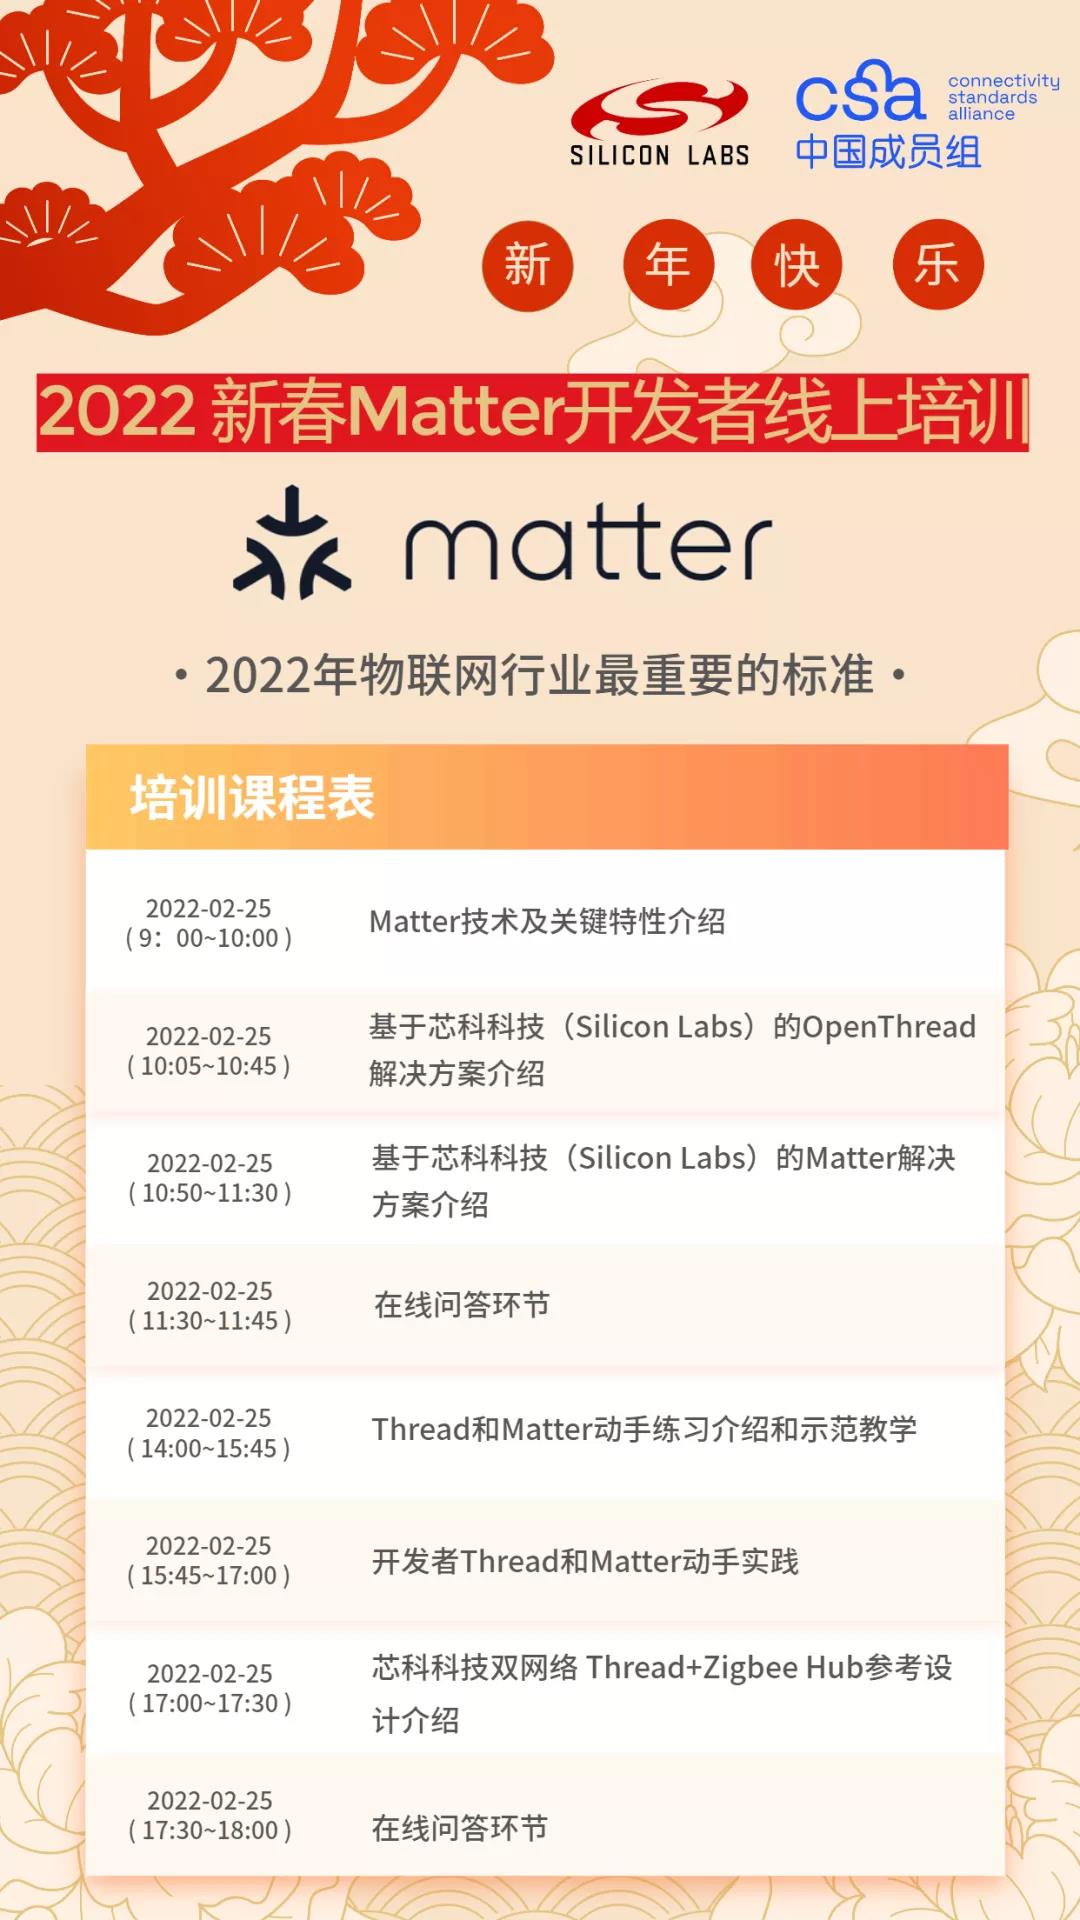 2/25携手CSA中国成员组举办行业首场Matter开发培训